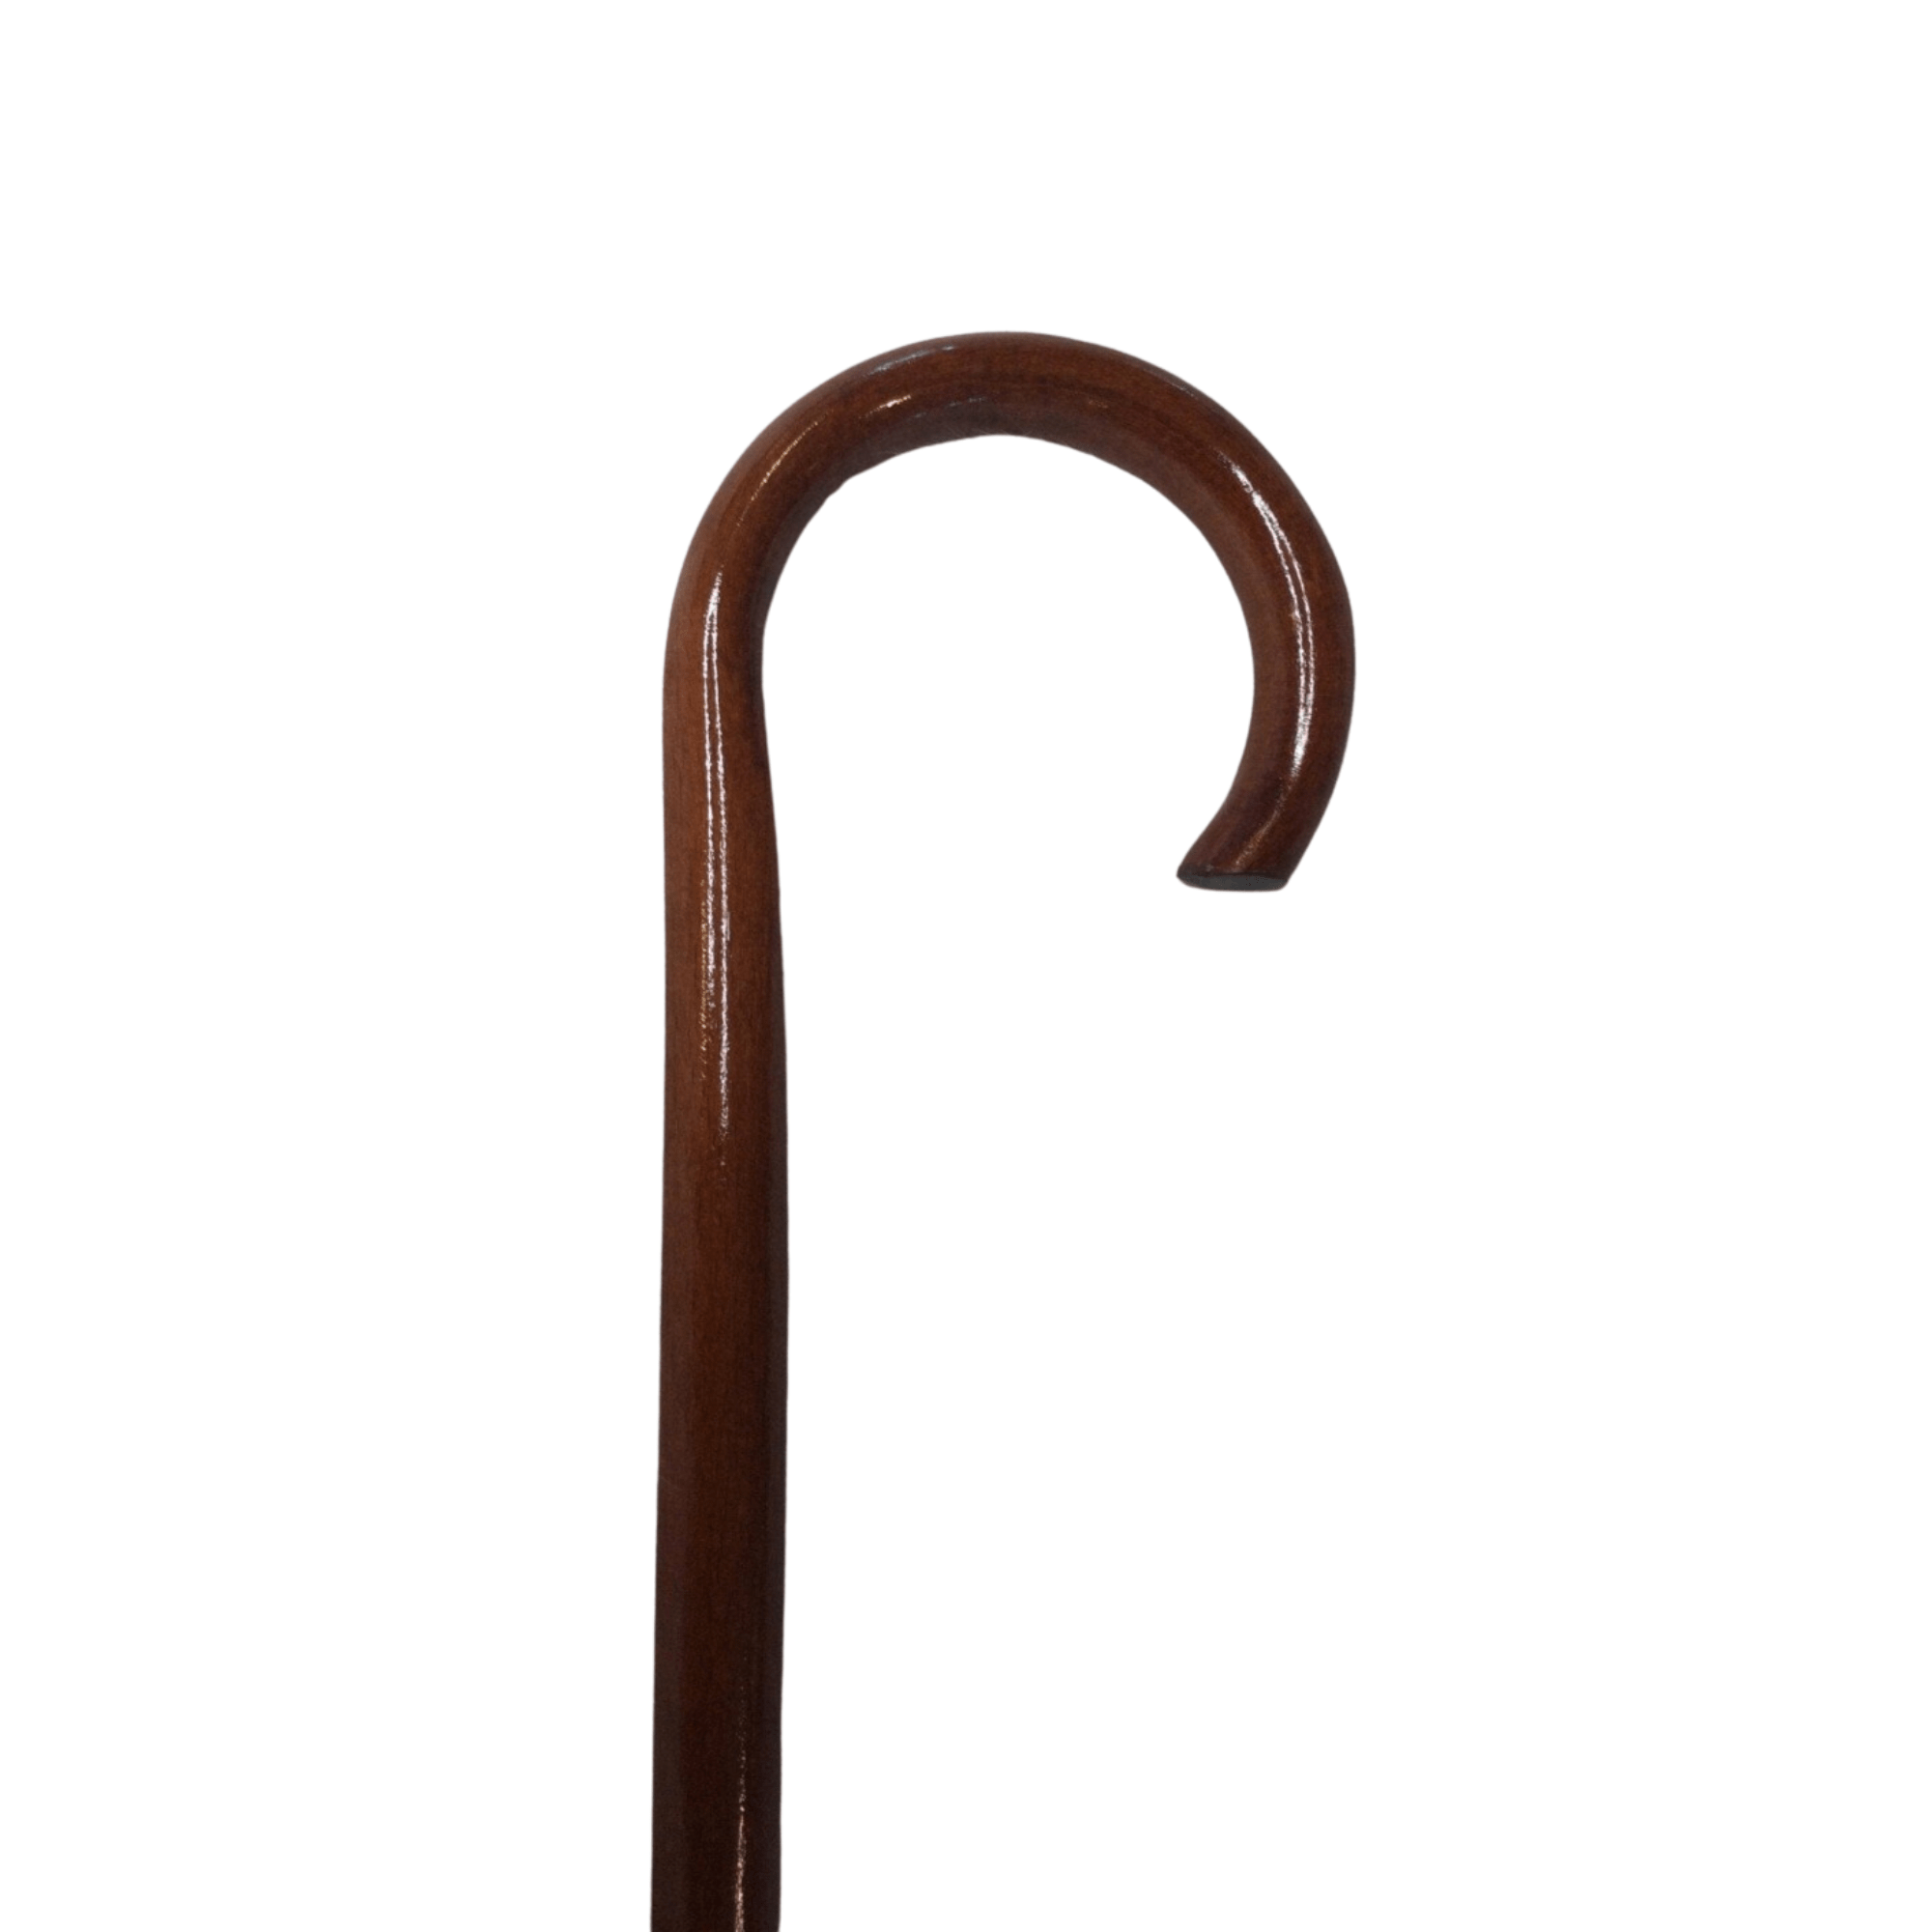 Billede af Luksus stok i mørkt træ - model GIETA med buet håndtag. 93 cm i højden